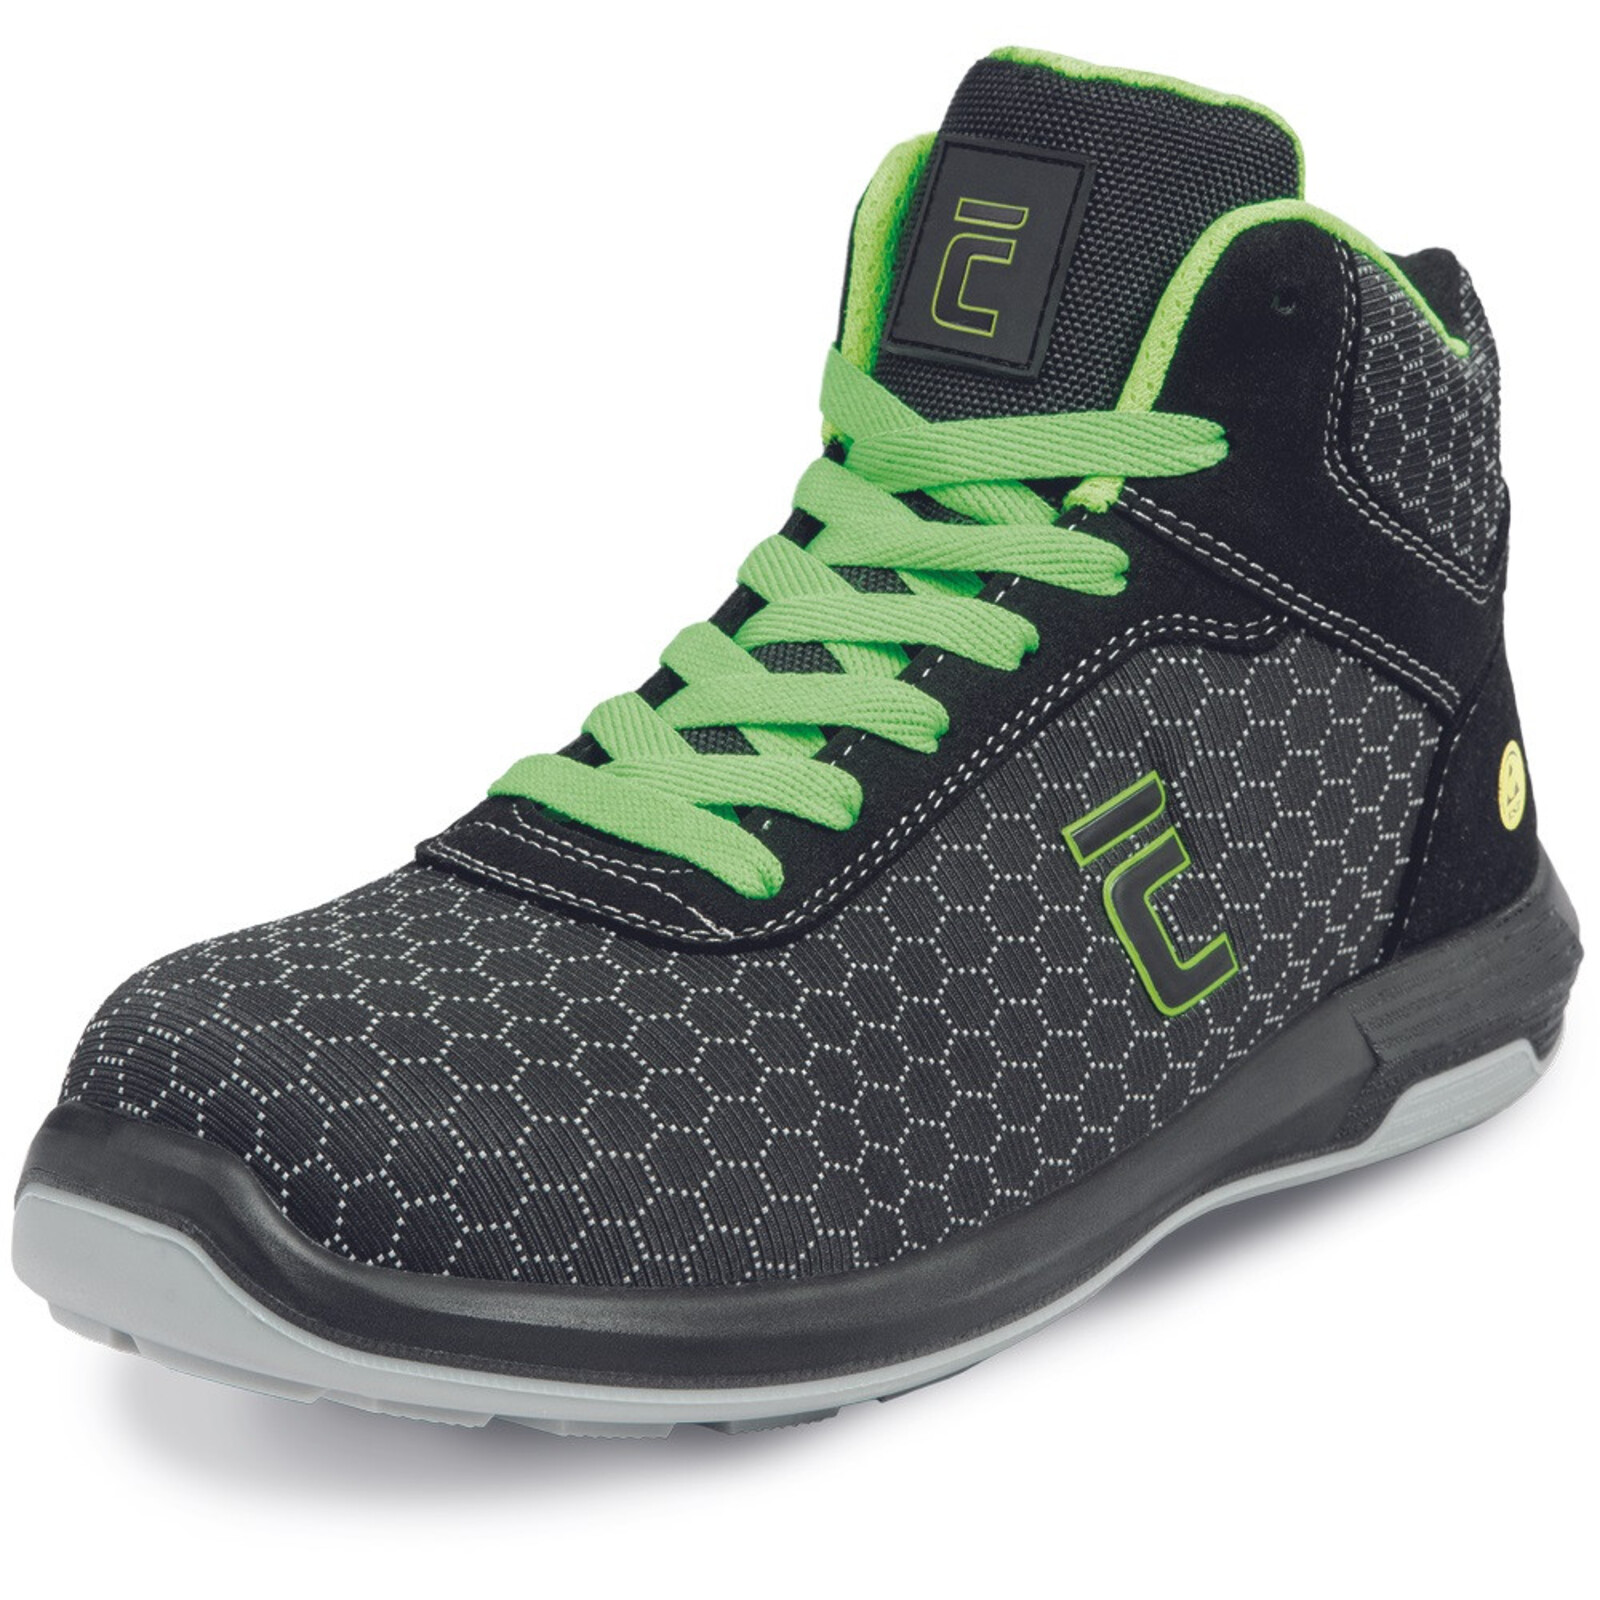 Bezpečnostná členková obuv Cerva Uttendorf MF ESD S3S SR - veľkosť: 46, farba: čierna/zelená